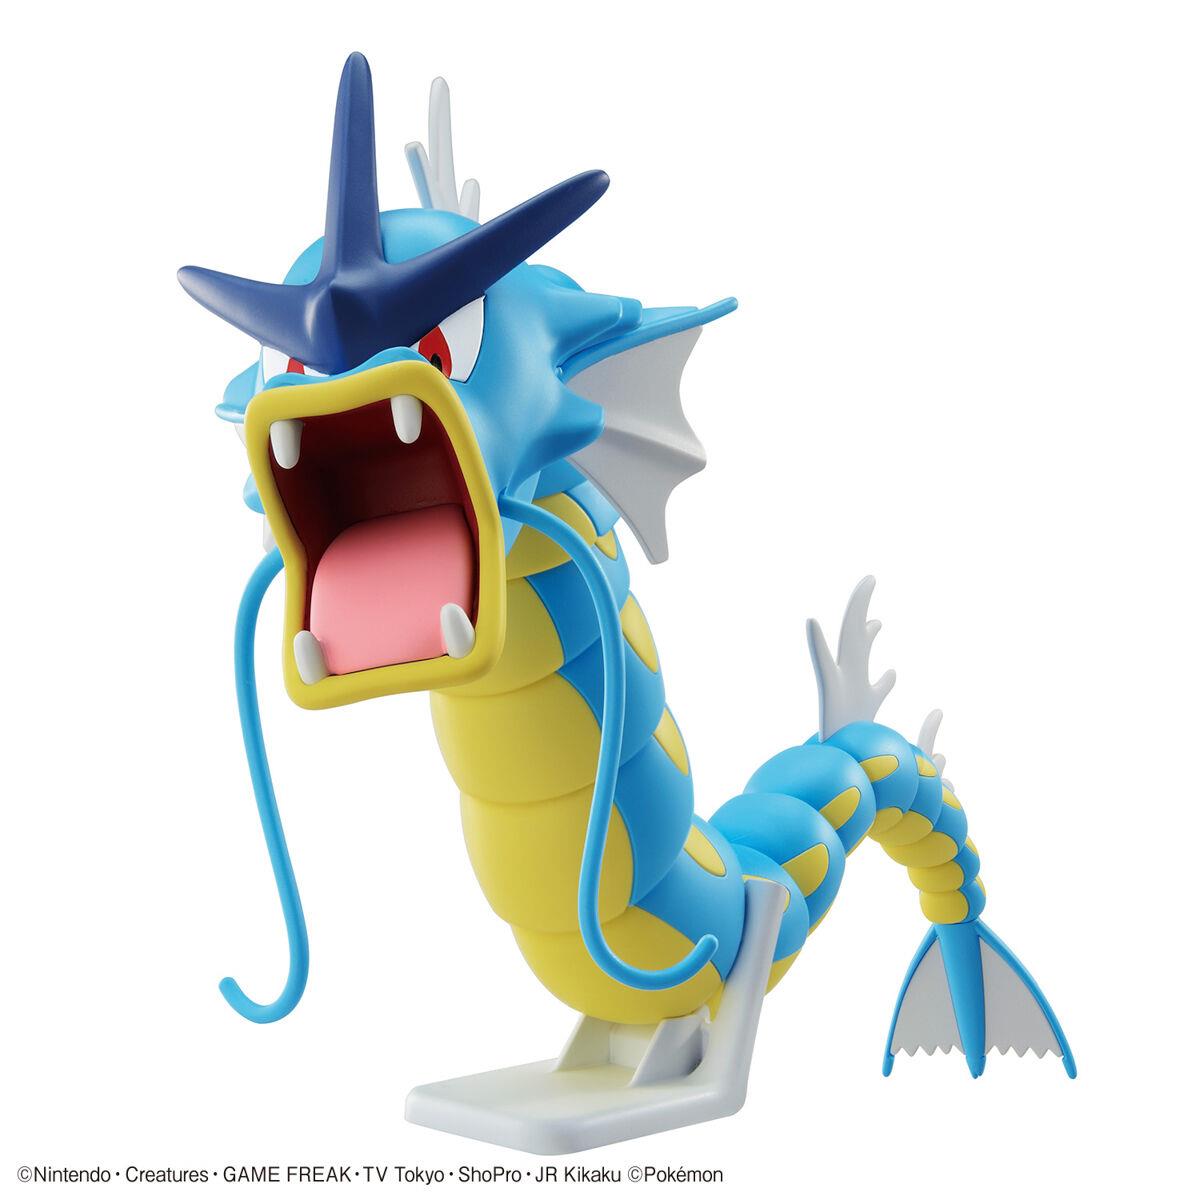 Pokemon: Gyarados PokePla Model